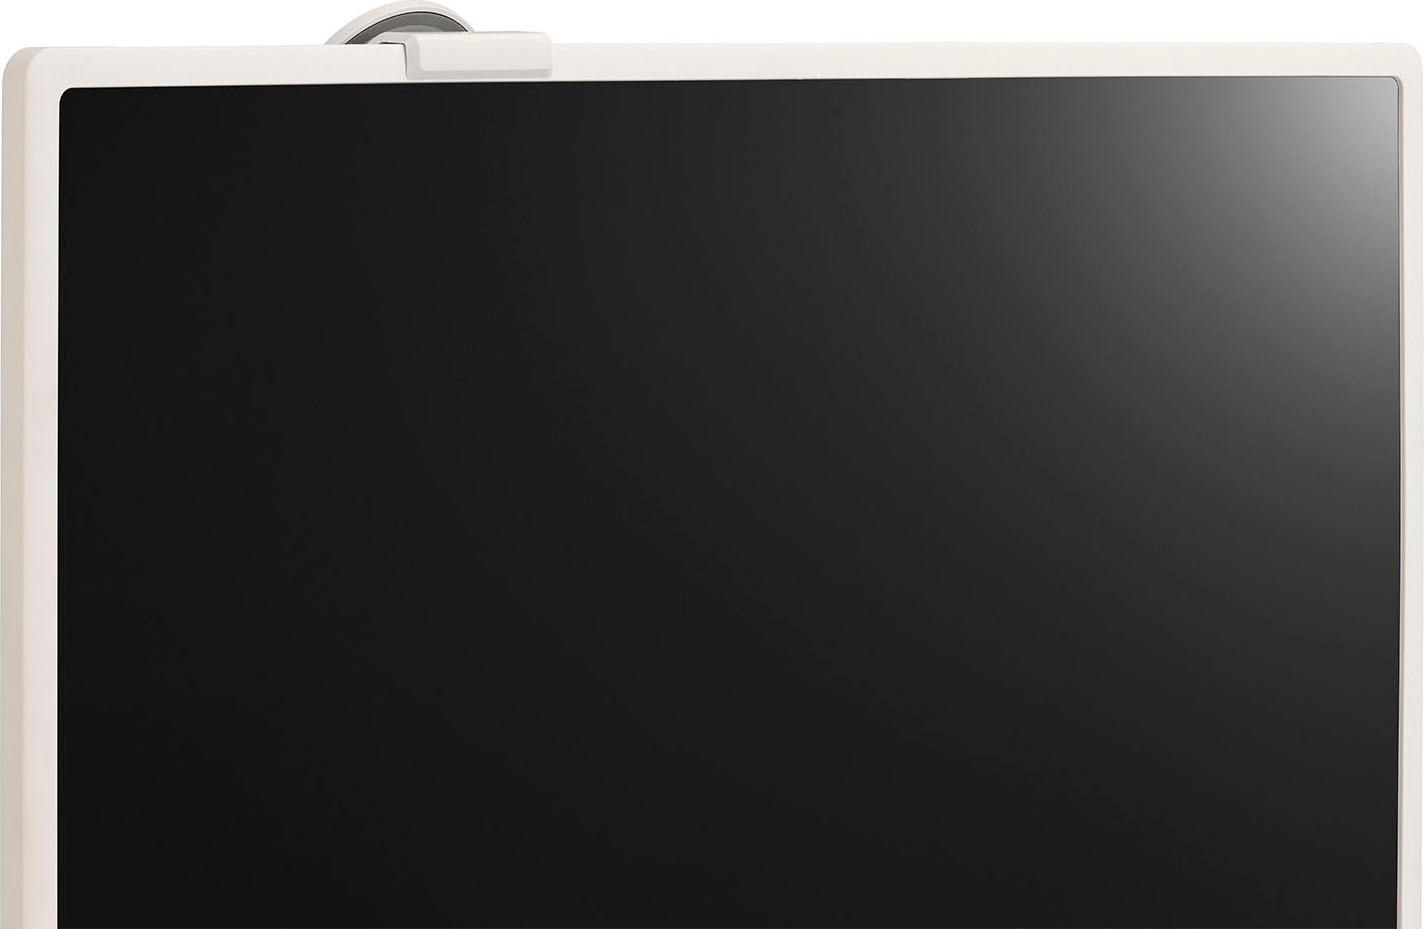 LG LCD-LED Fernseher »27ART10AKPL«, 68 cm/27 Zoll, Full HD, Smart-TV, FHD, Integrierter Akku (bis zu 3Std. Laufzeit), Dreh- & Neigbar, webOS